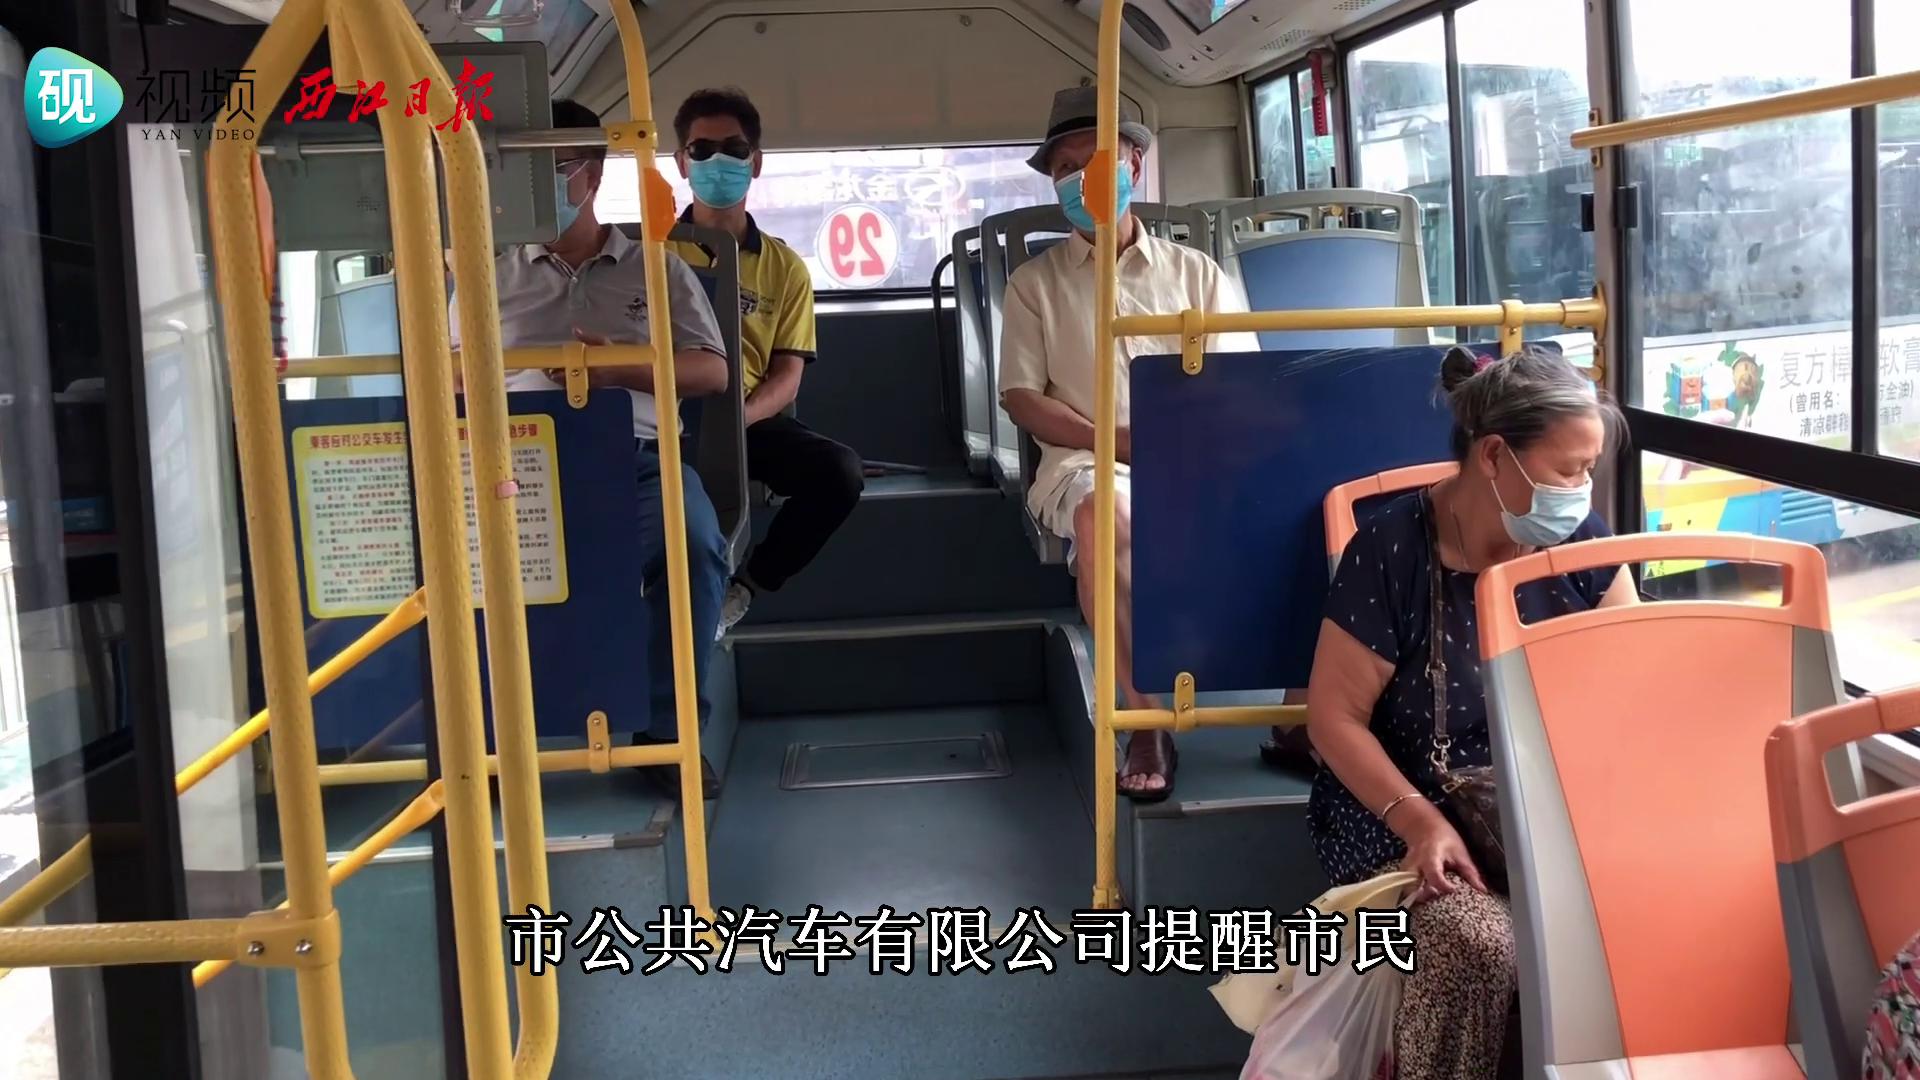 肇庆市区推出公交车红外线测温仪 乘客上车即可自助测温